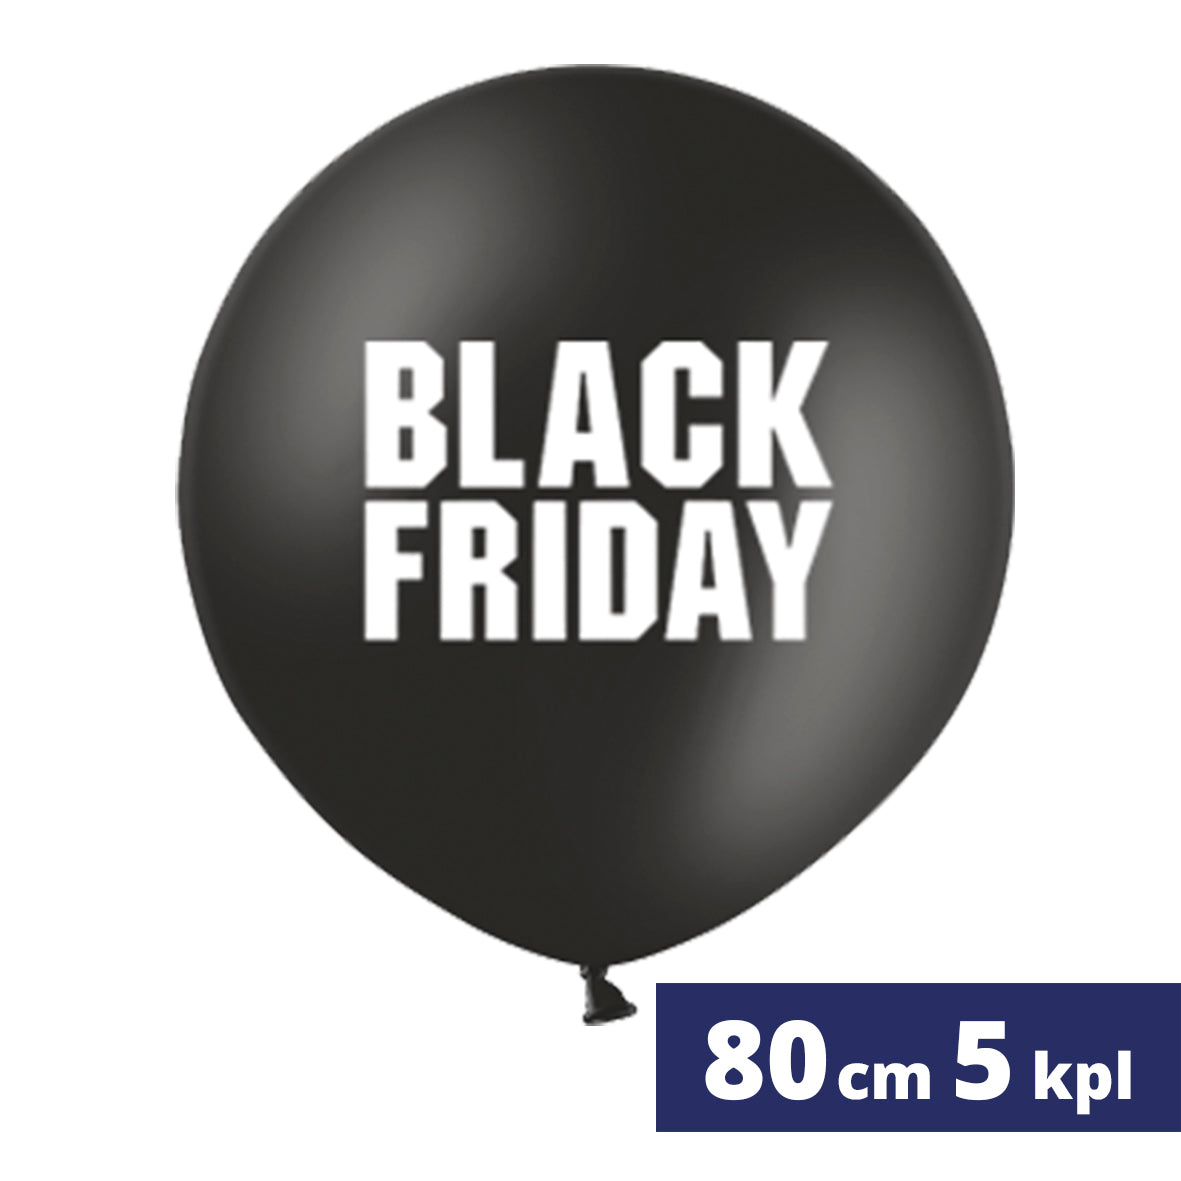 5 kpl 80 cm Black Friday jättipalloa täytettynä ja toimitettuna